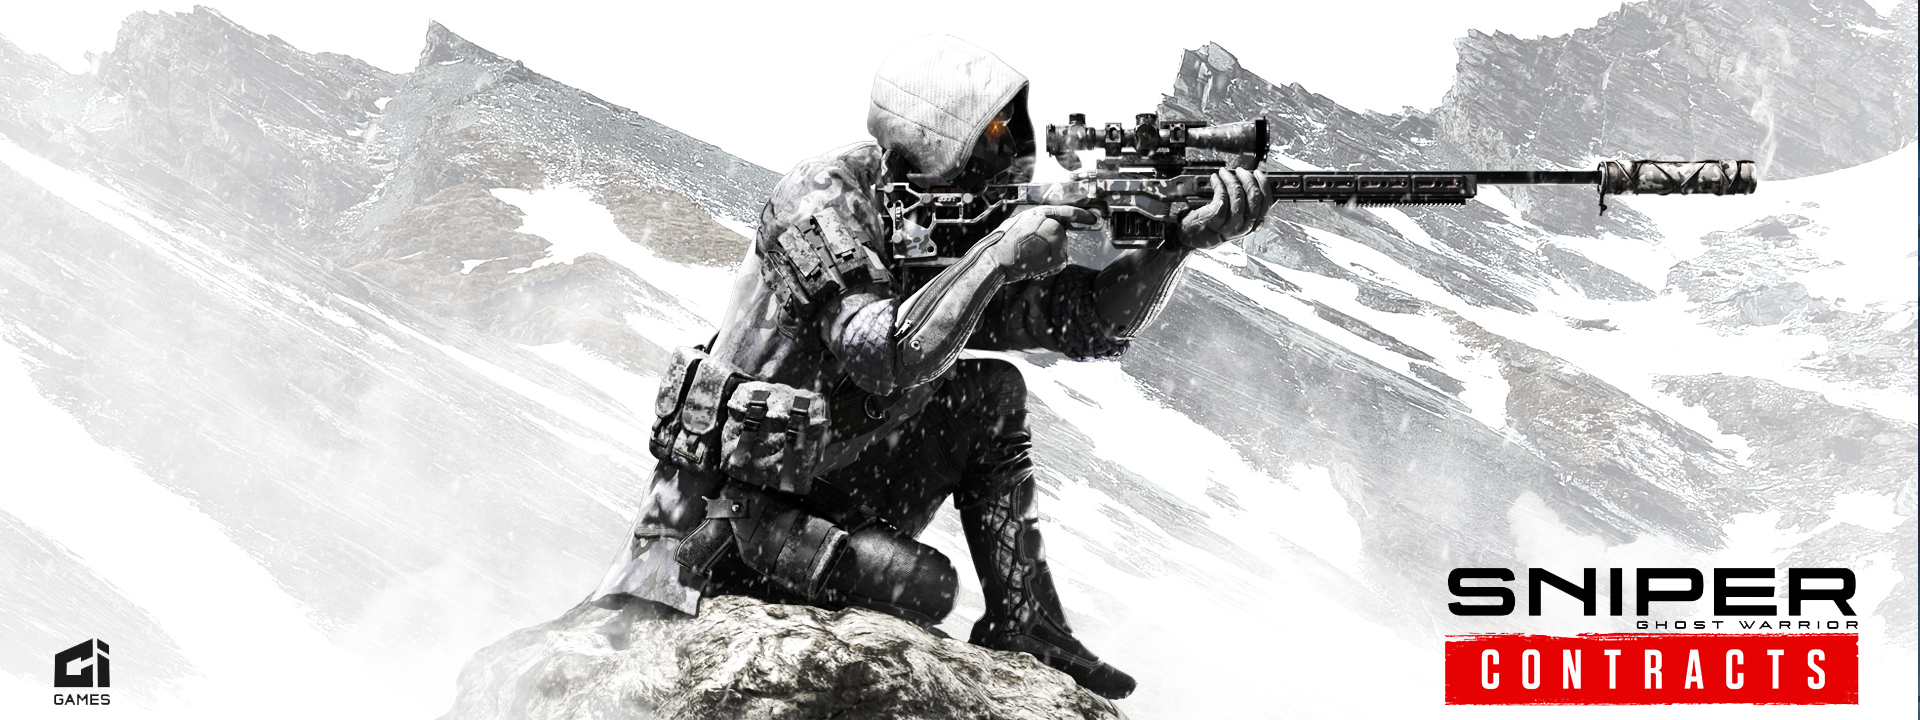 Sniper Ghost Warrior Contracts je krokem správným směrem